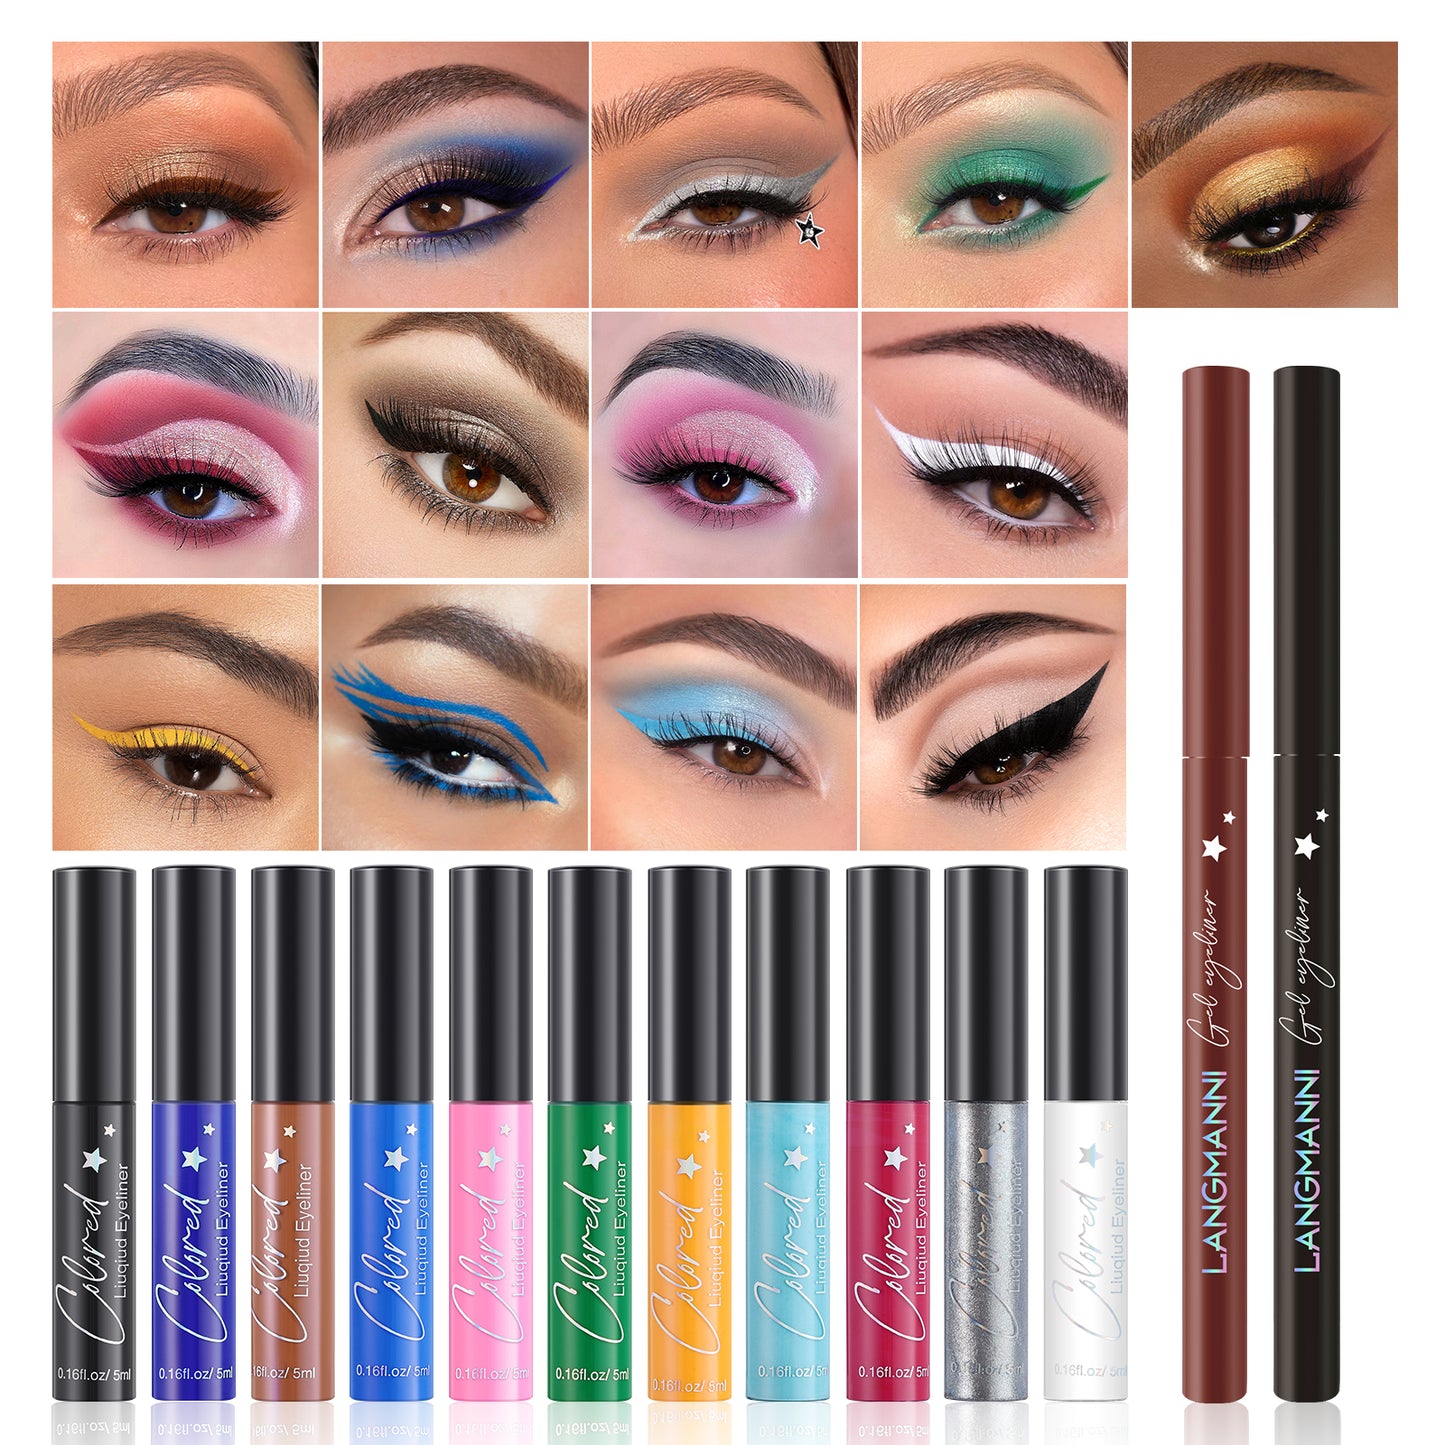 Make-up Eyeliner Liquid  And Gel Pen Combination Set